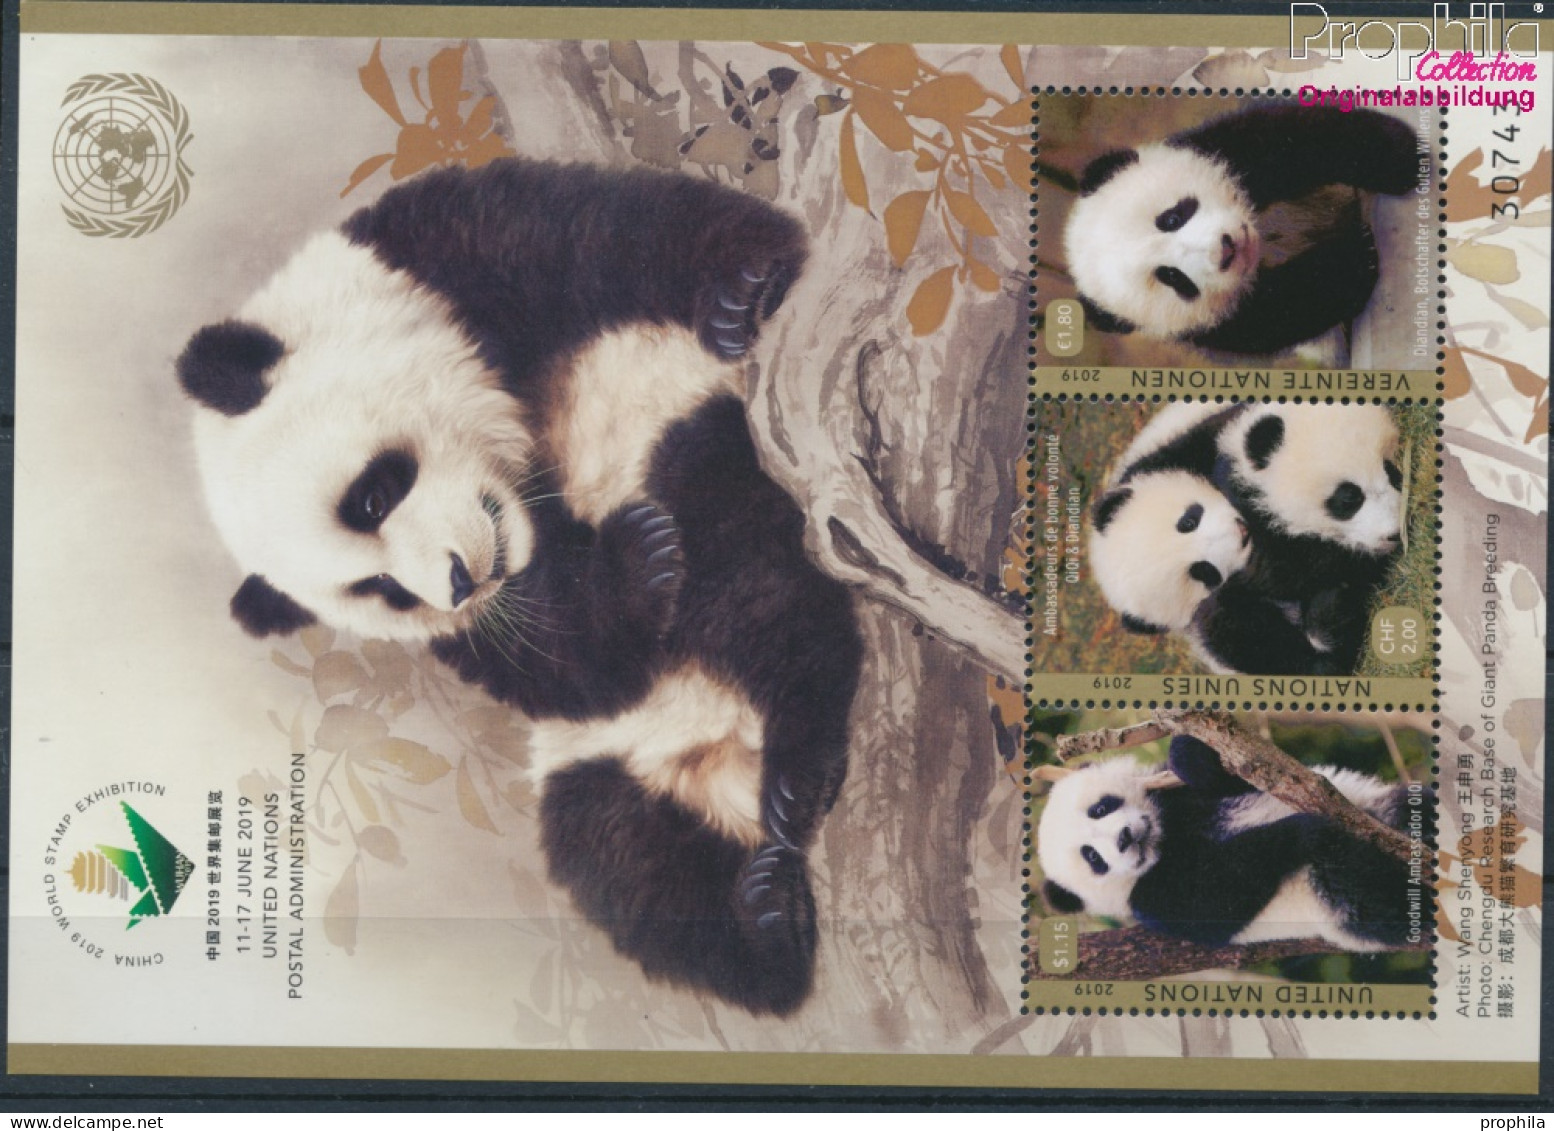 UNO - Genf Block55 (kompl.Ausg.) Postfrisch 2019 Pandabär (10194032 - Unused Stamps